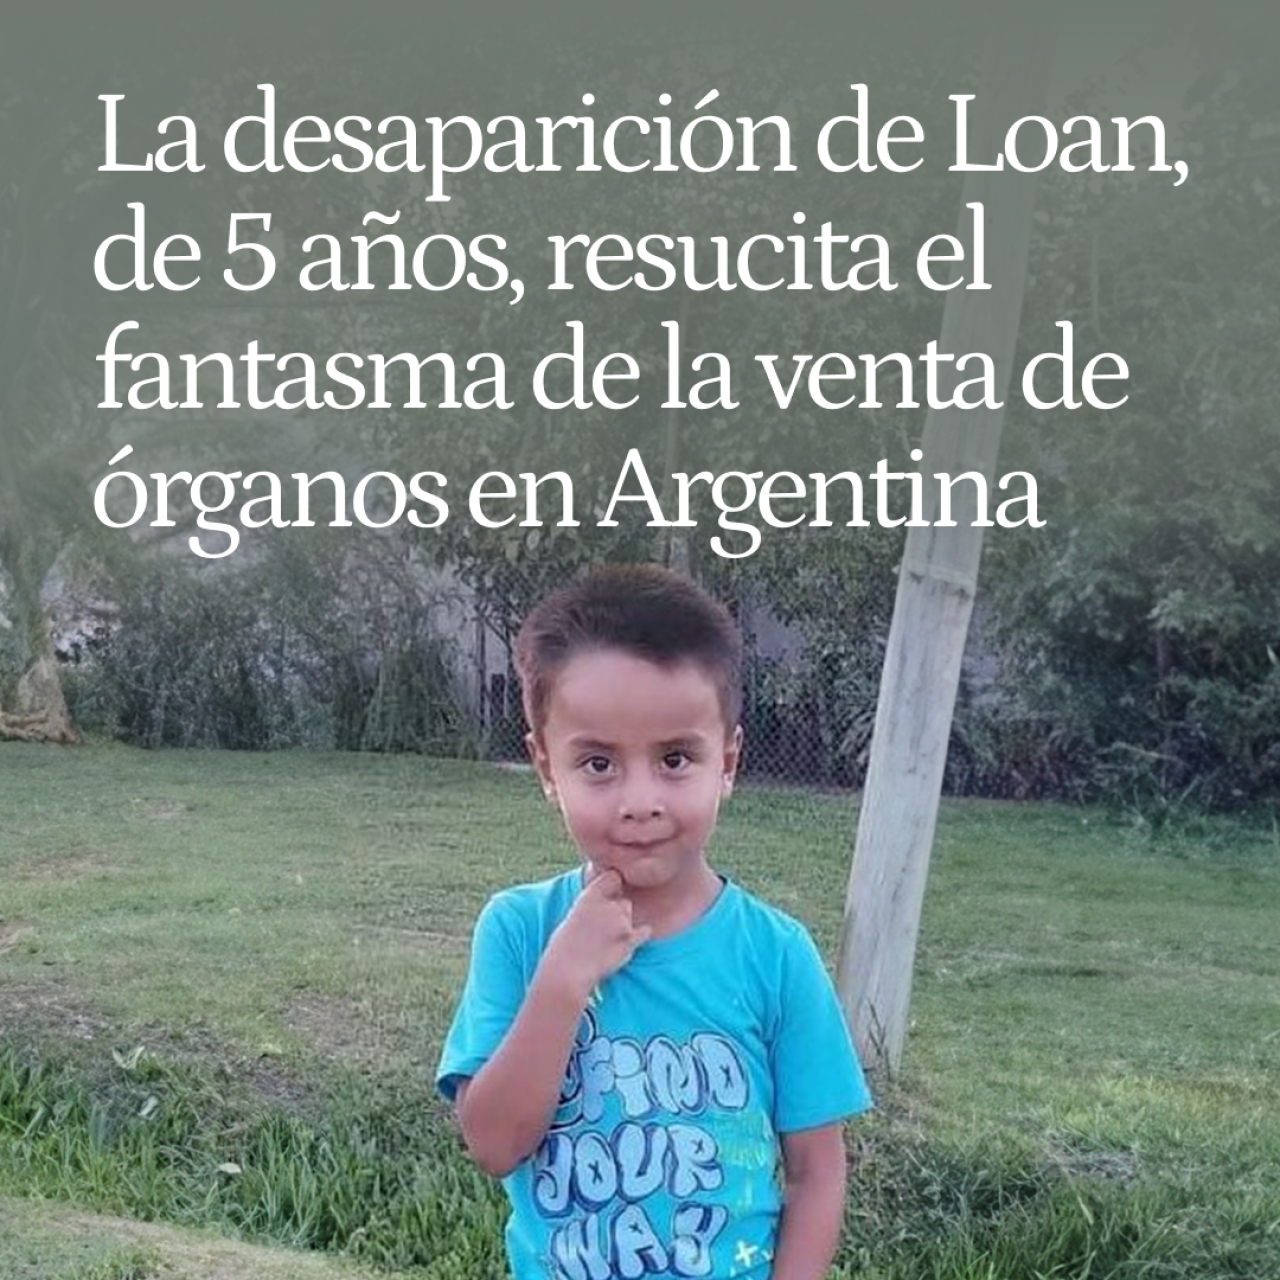 La desaparición de Loan, un niño de 5 años, resucita el fantasma de la venta de órganos en Argentina